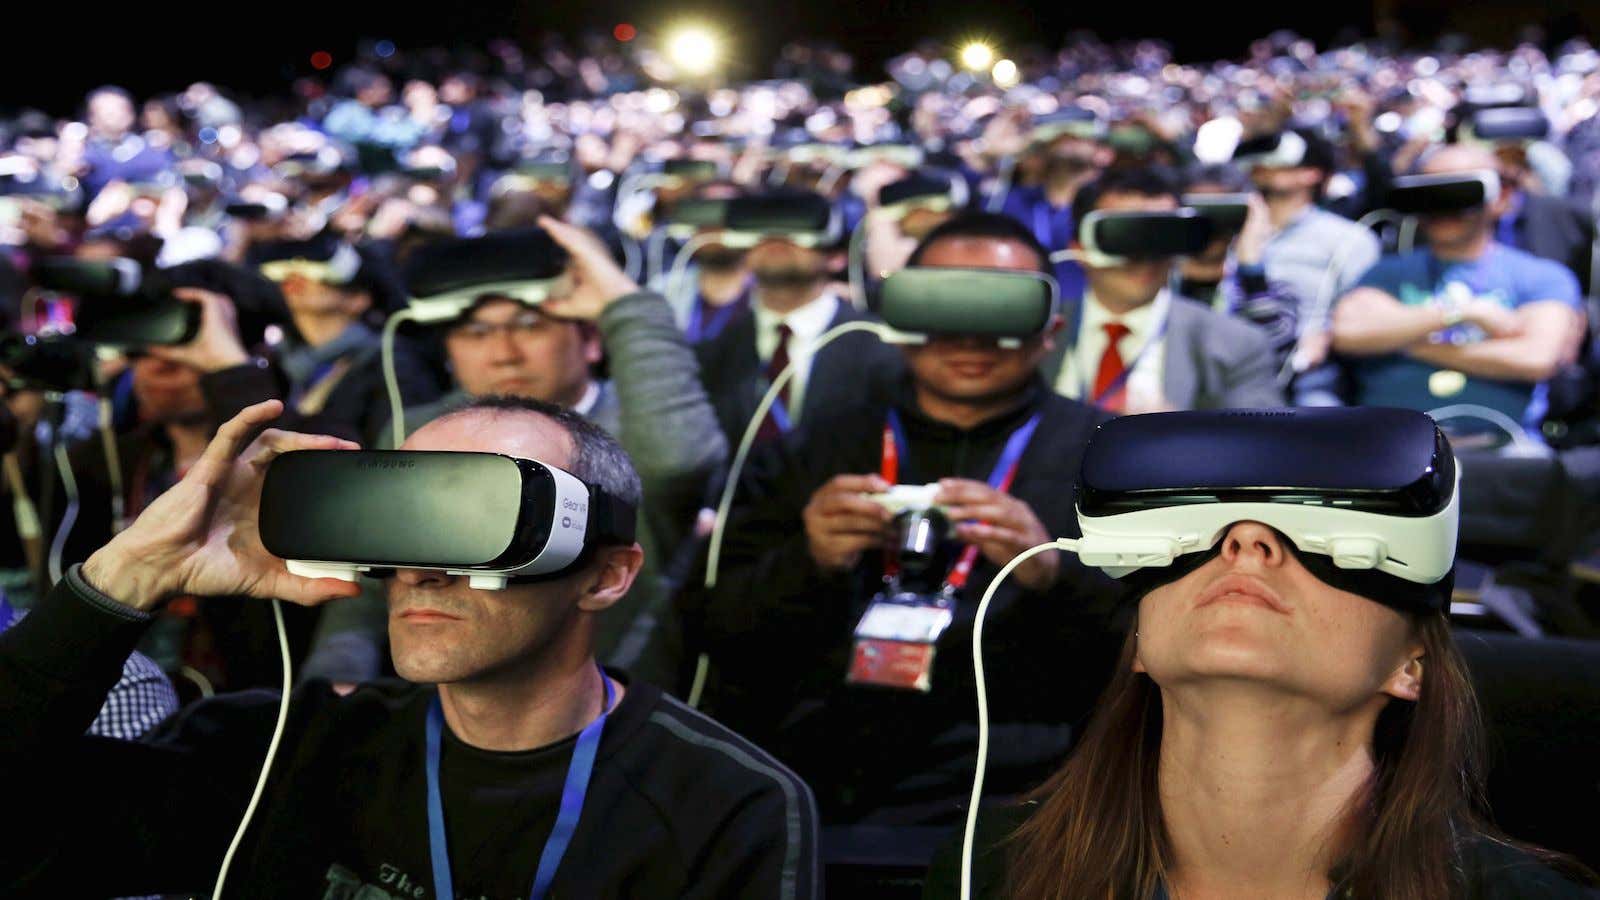 VR filmmaking is still in its infancy.